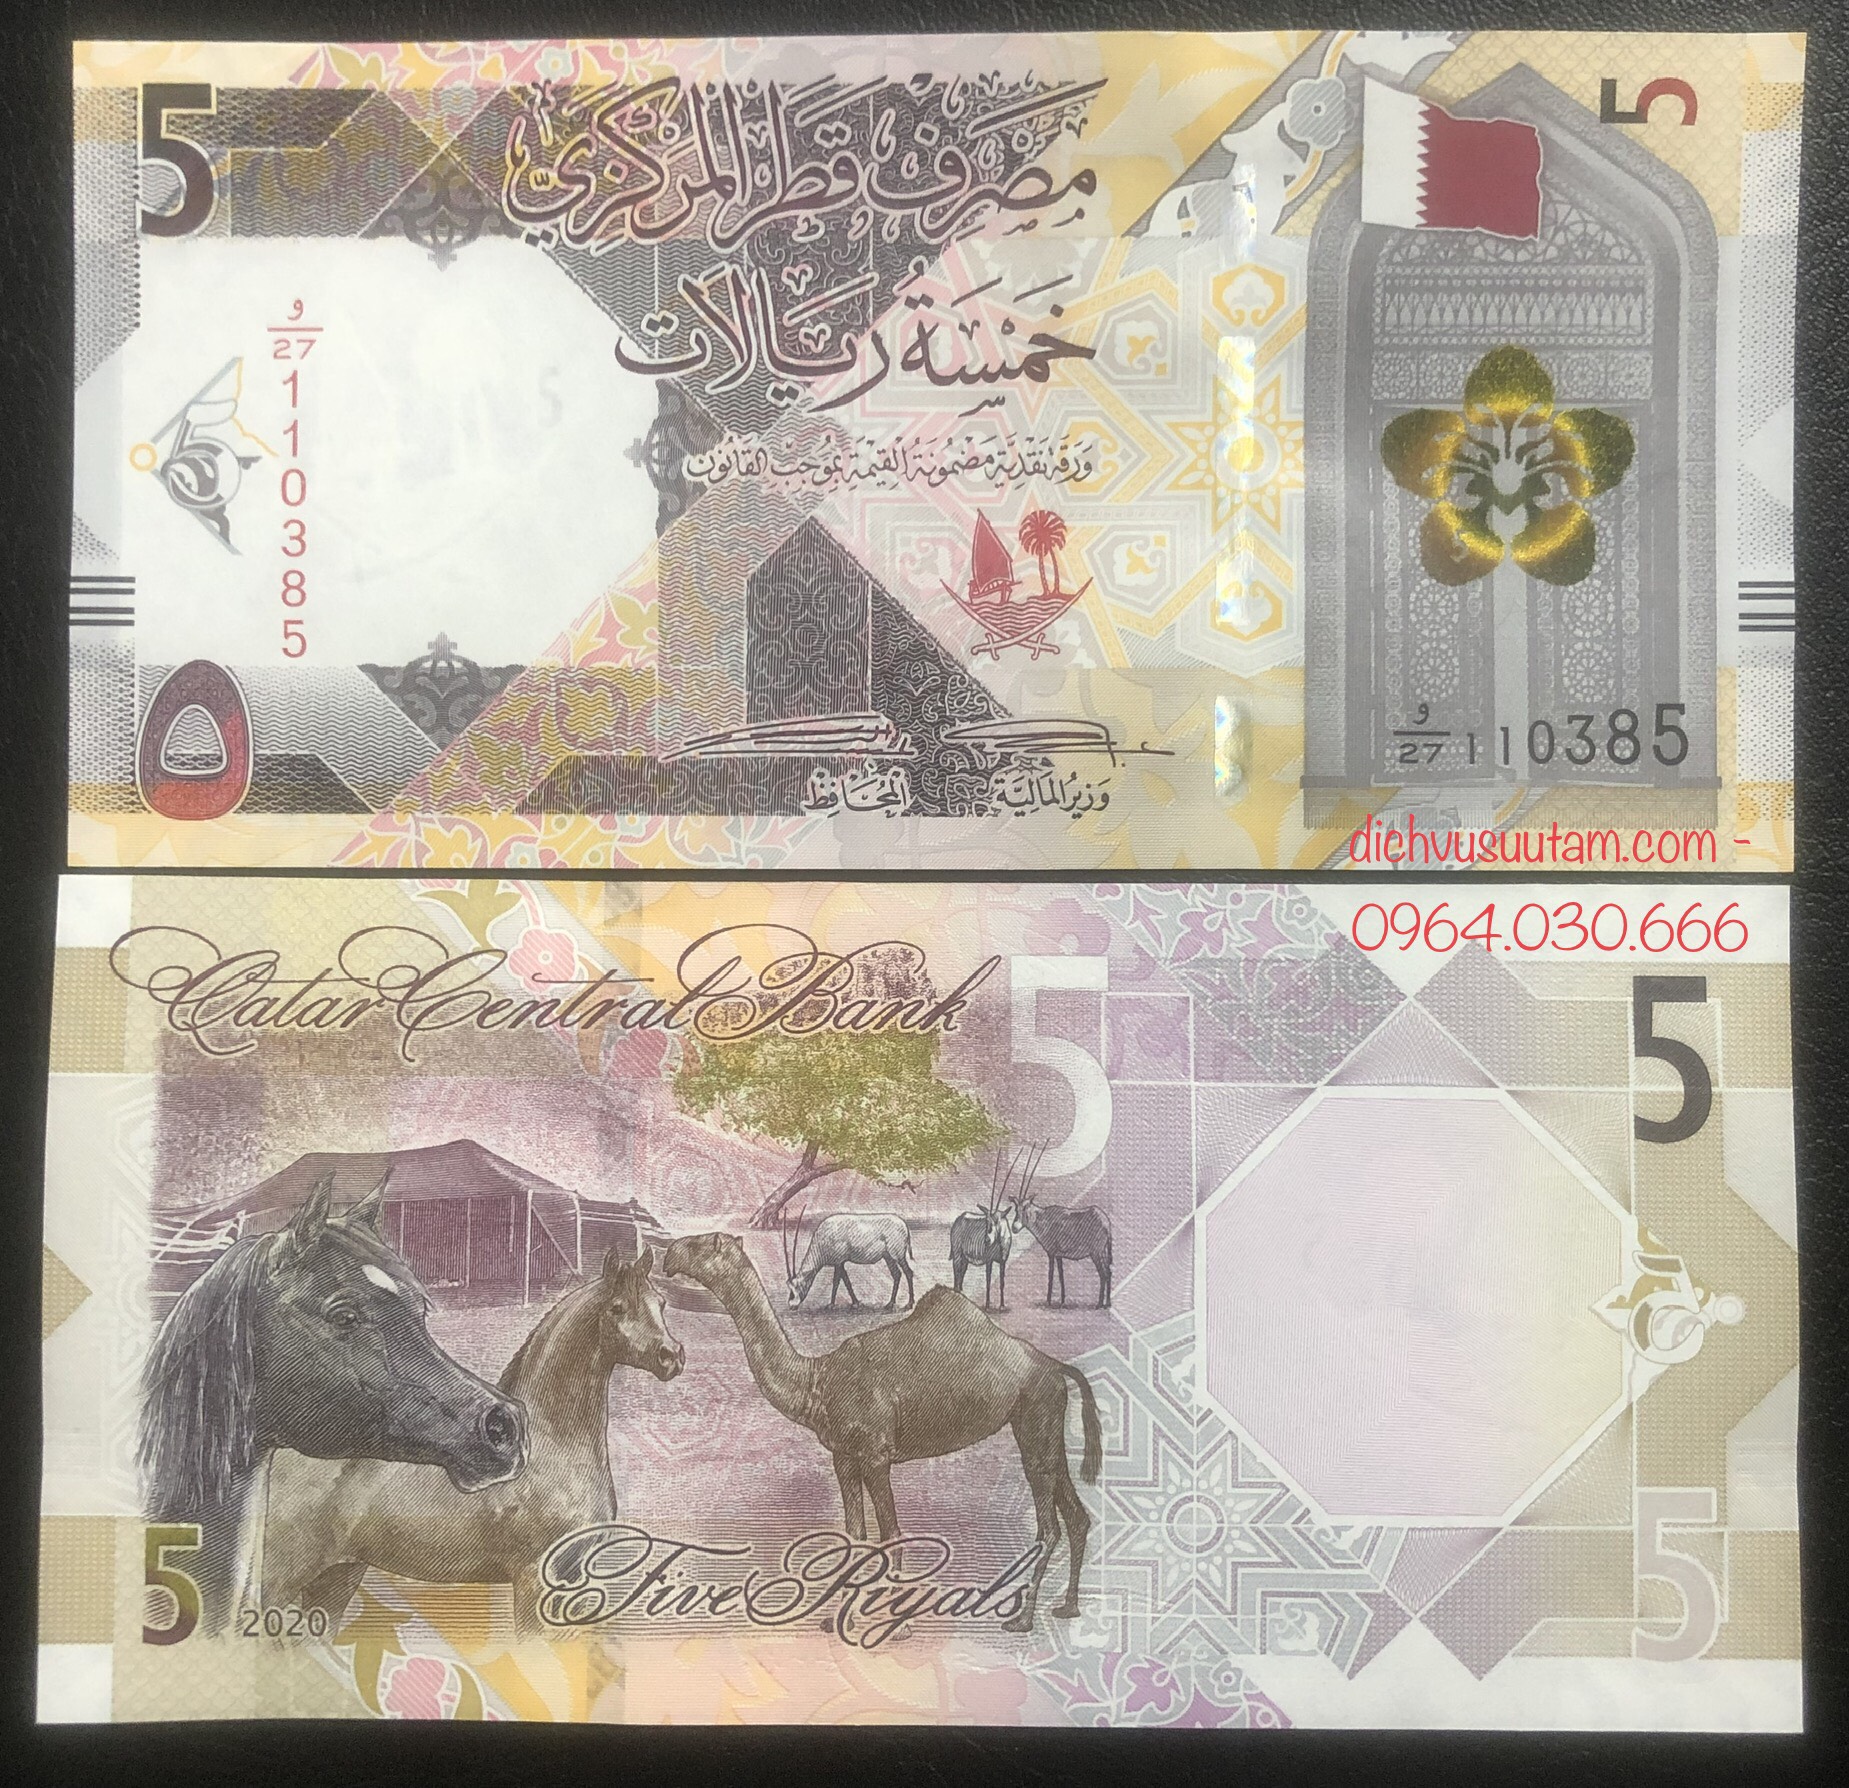 Tiền Qatar 5 riyals, hình ảnh động vật sưu tầm